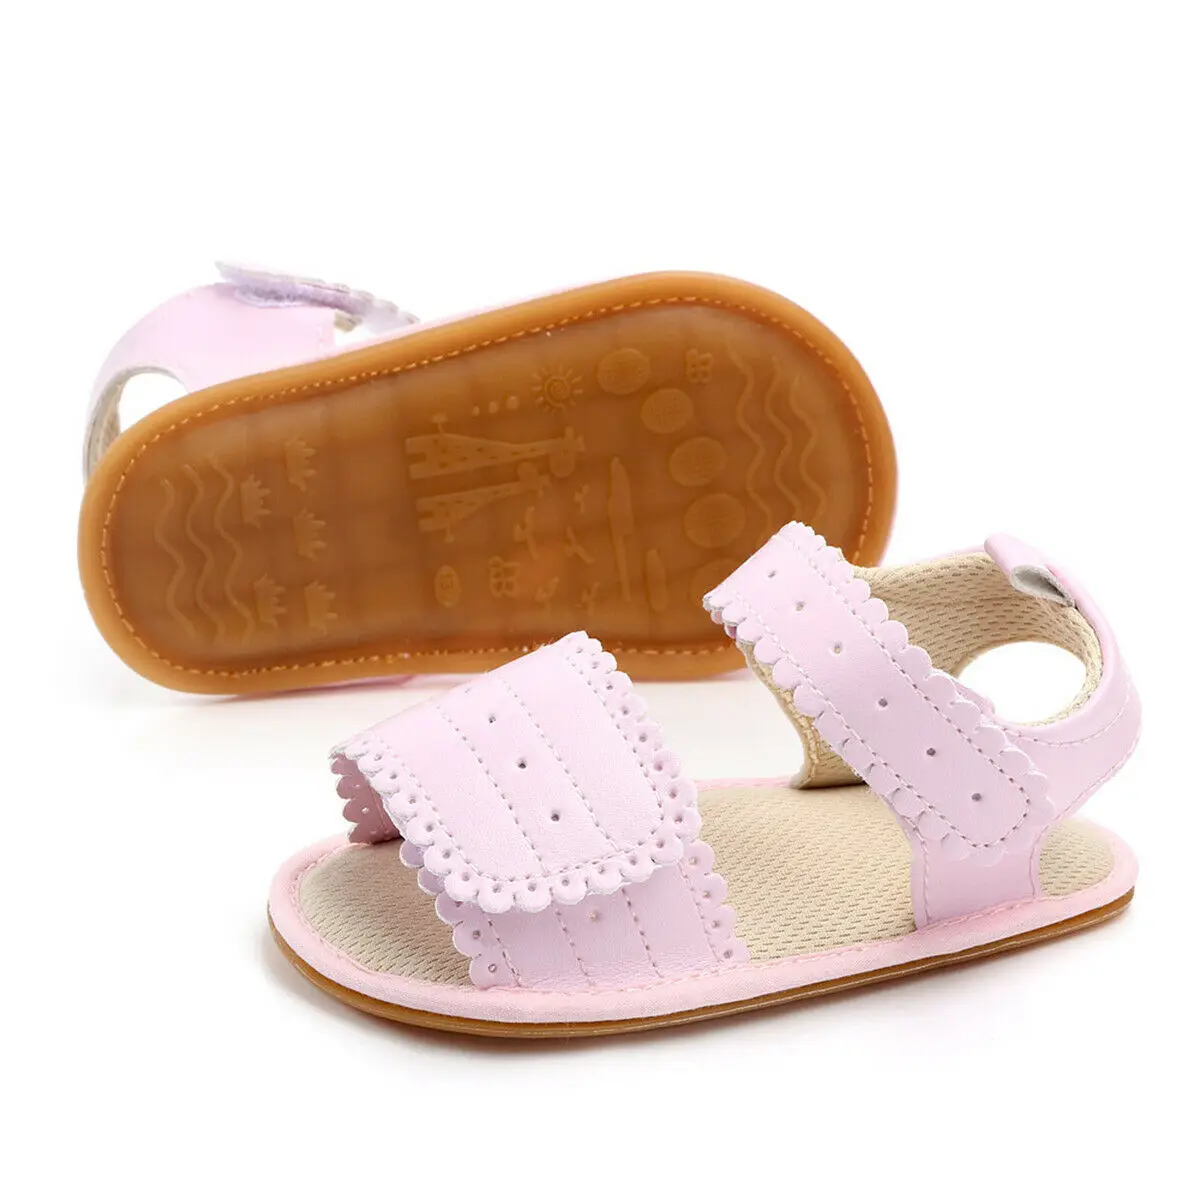 Emmaaby/сандалии для девочек нескользящая обувь для младенцев, летние сандалии с мягкой подошвой первая обувь для маленьких девочек 0-12 месяцев, 2 цвета